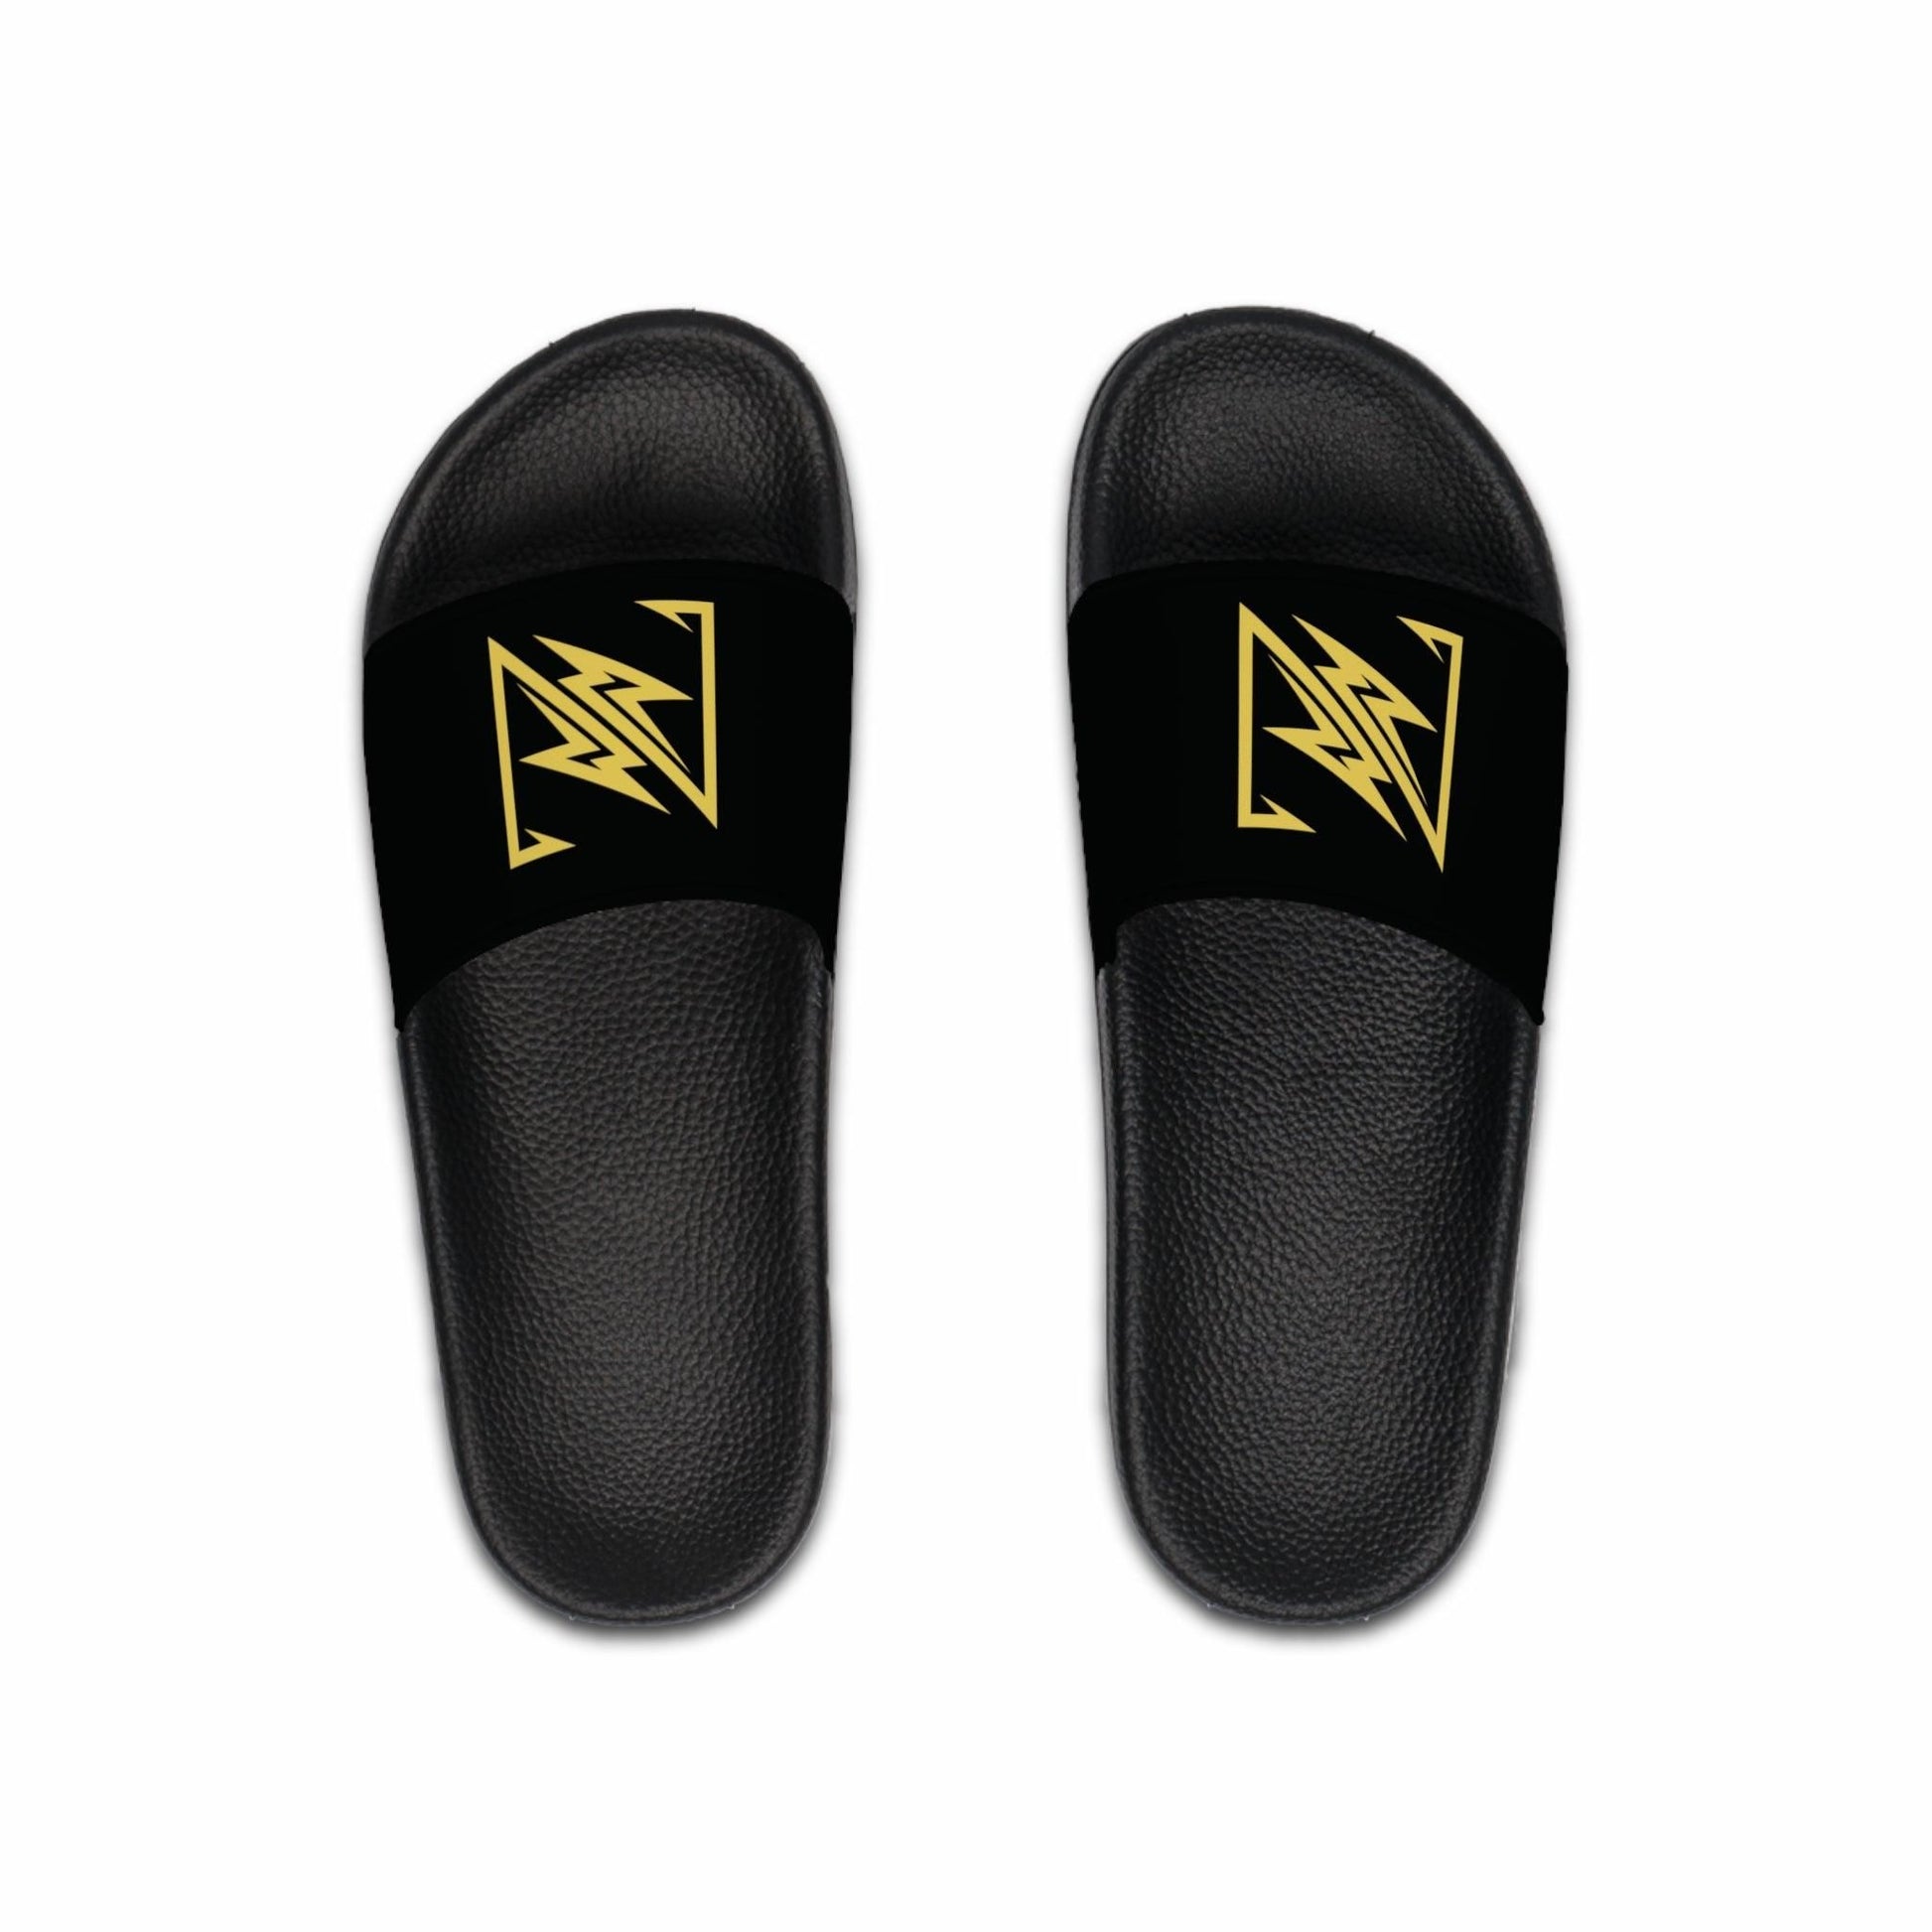 nx vogue Men's Slide Sandals Shoes Black sole US 8 